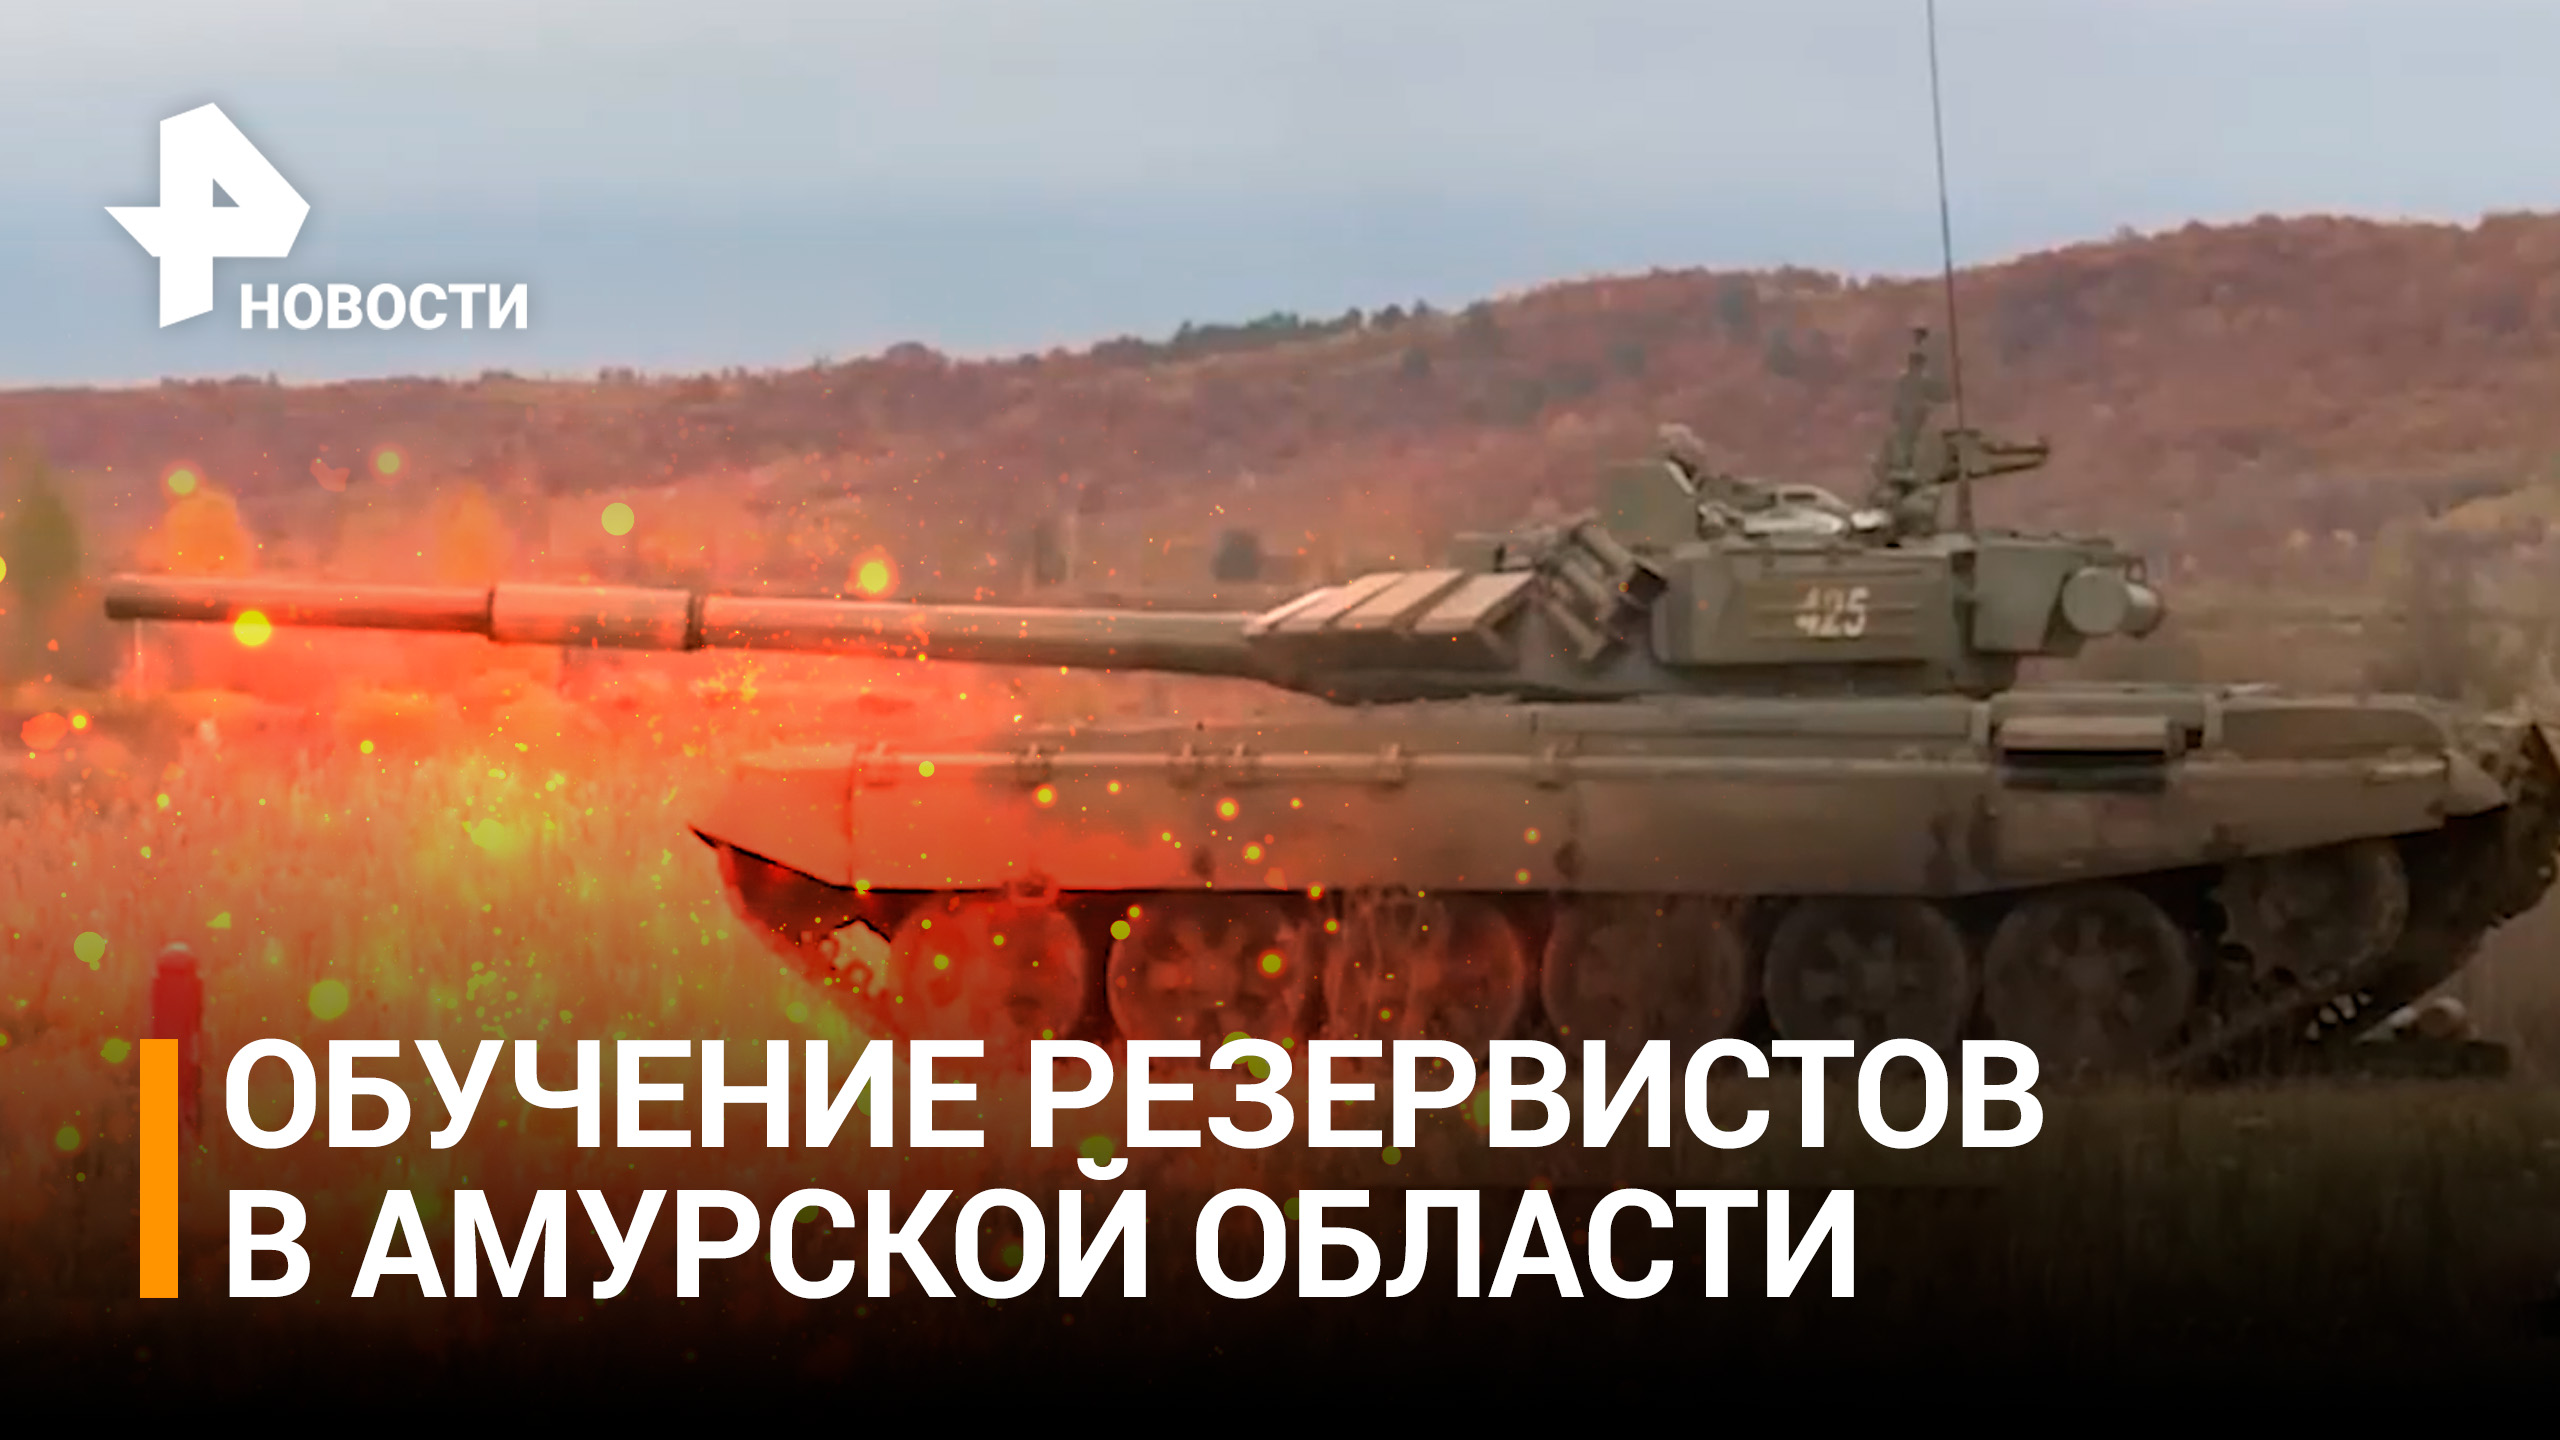 Как обучают резервистов в Амурской области: танки, оружие, подготовка / РЕН Новости